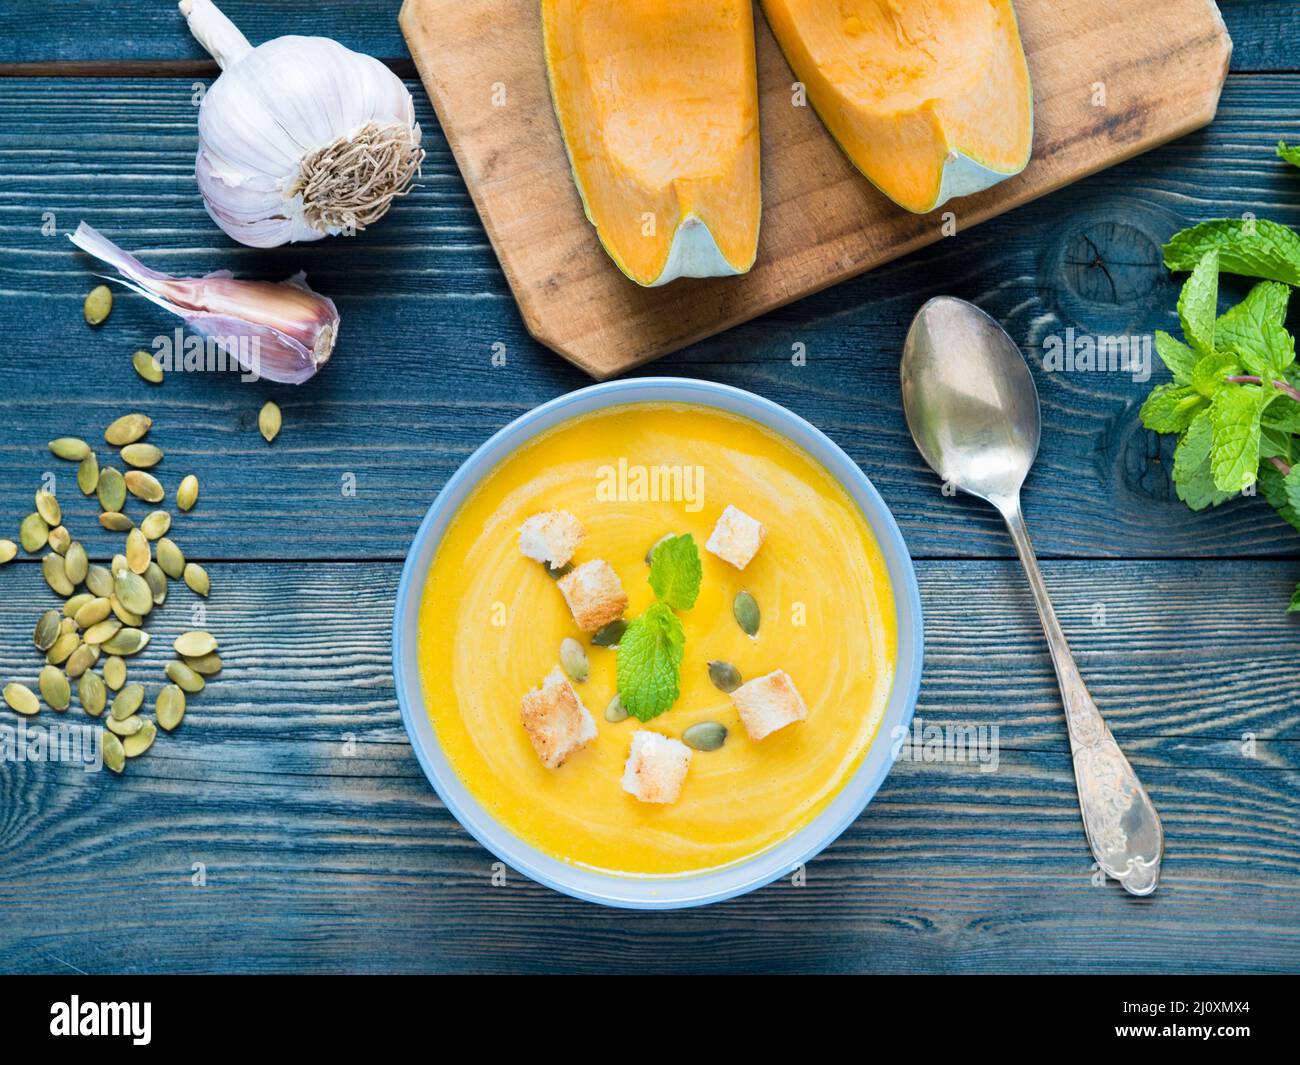 Von Kürbis cremige Suppe mit Croutons und Samen auf dunkelblauem Hintergrund Holz, Knoblauch, Minze, kürbisscheiben. Ansicht von oben. Stockfoto